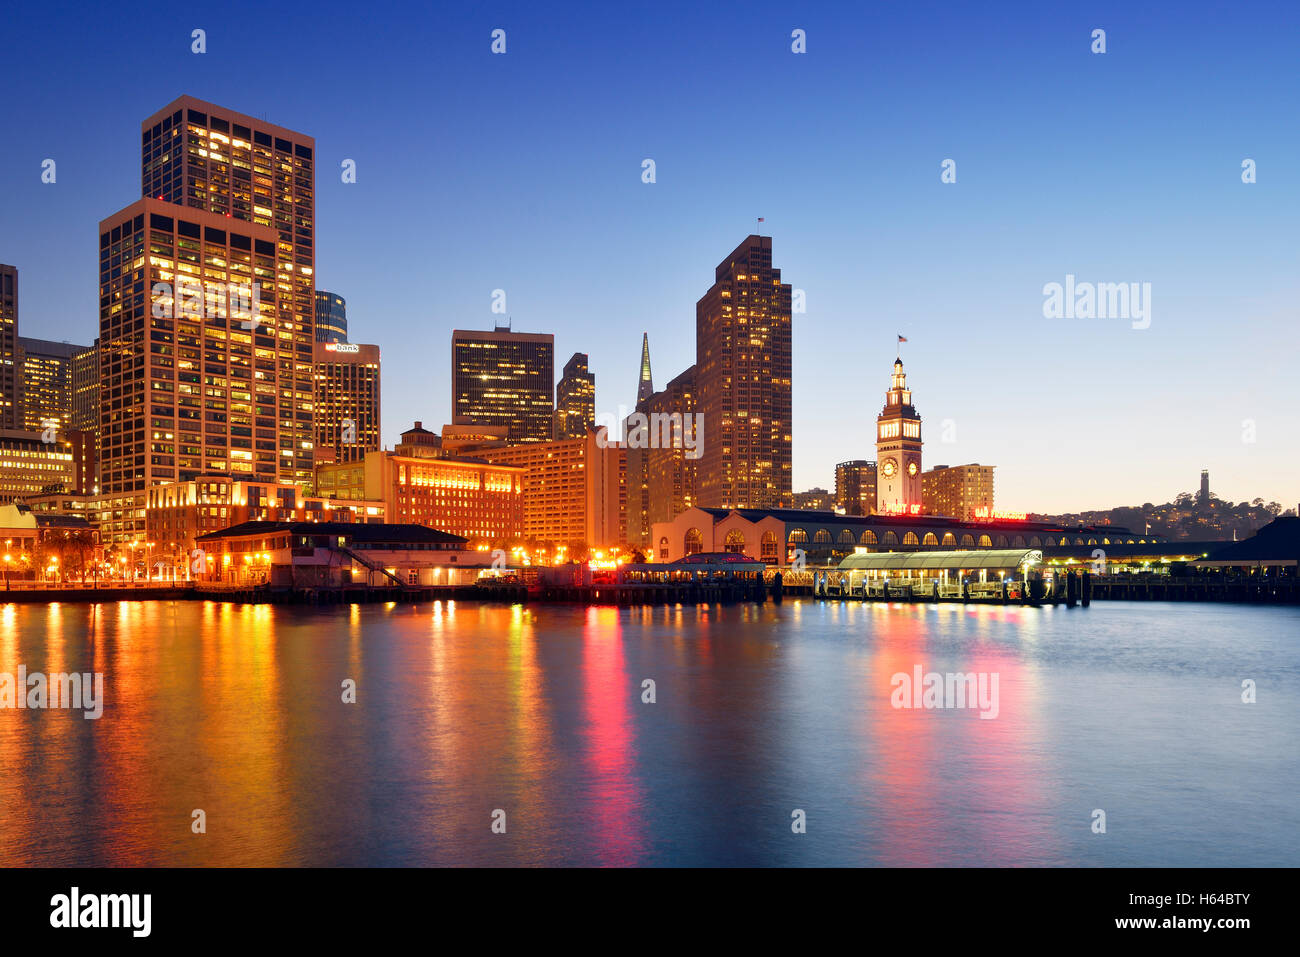 USA, Kalifornien, San Francisco, Financial District, Embarcadero, Ferry Building und Telegraph Hill mit Coit Tower zur blauen Stunde Stockfoto